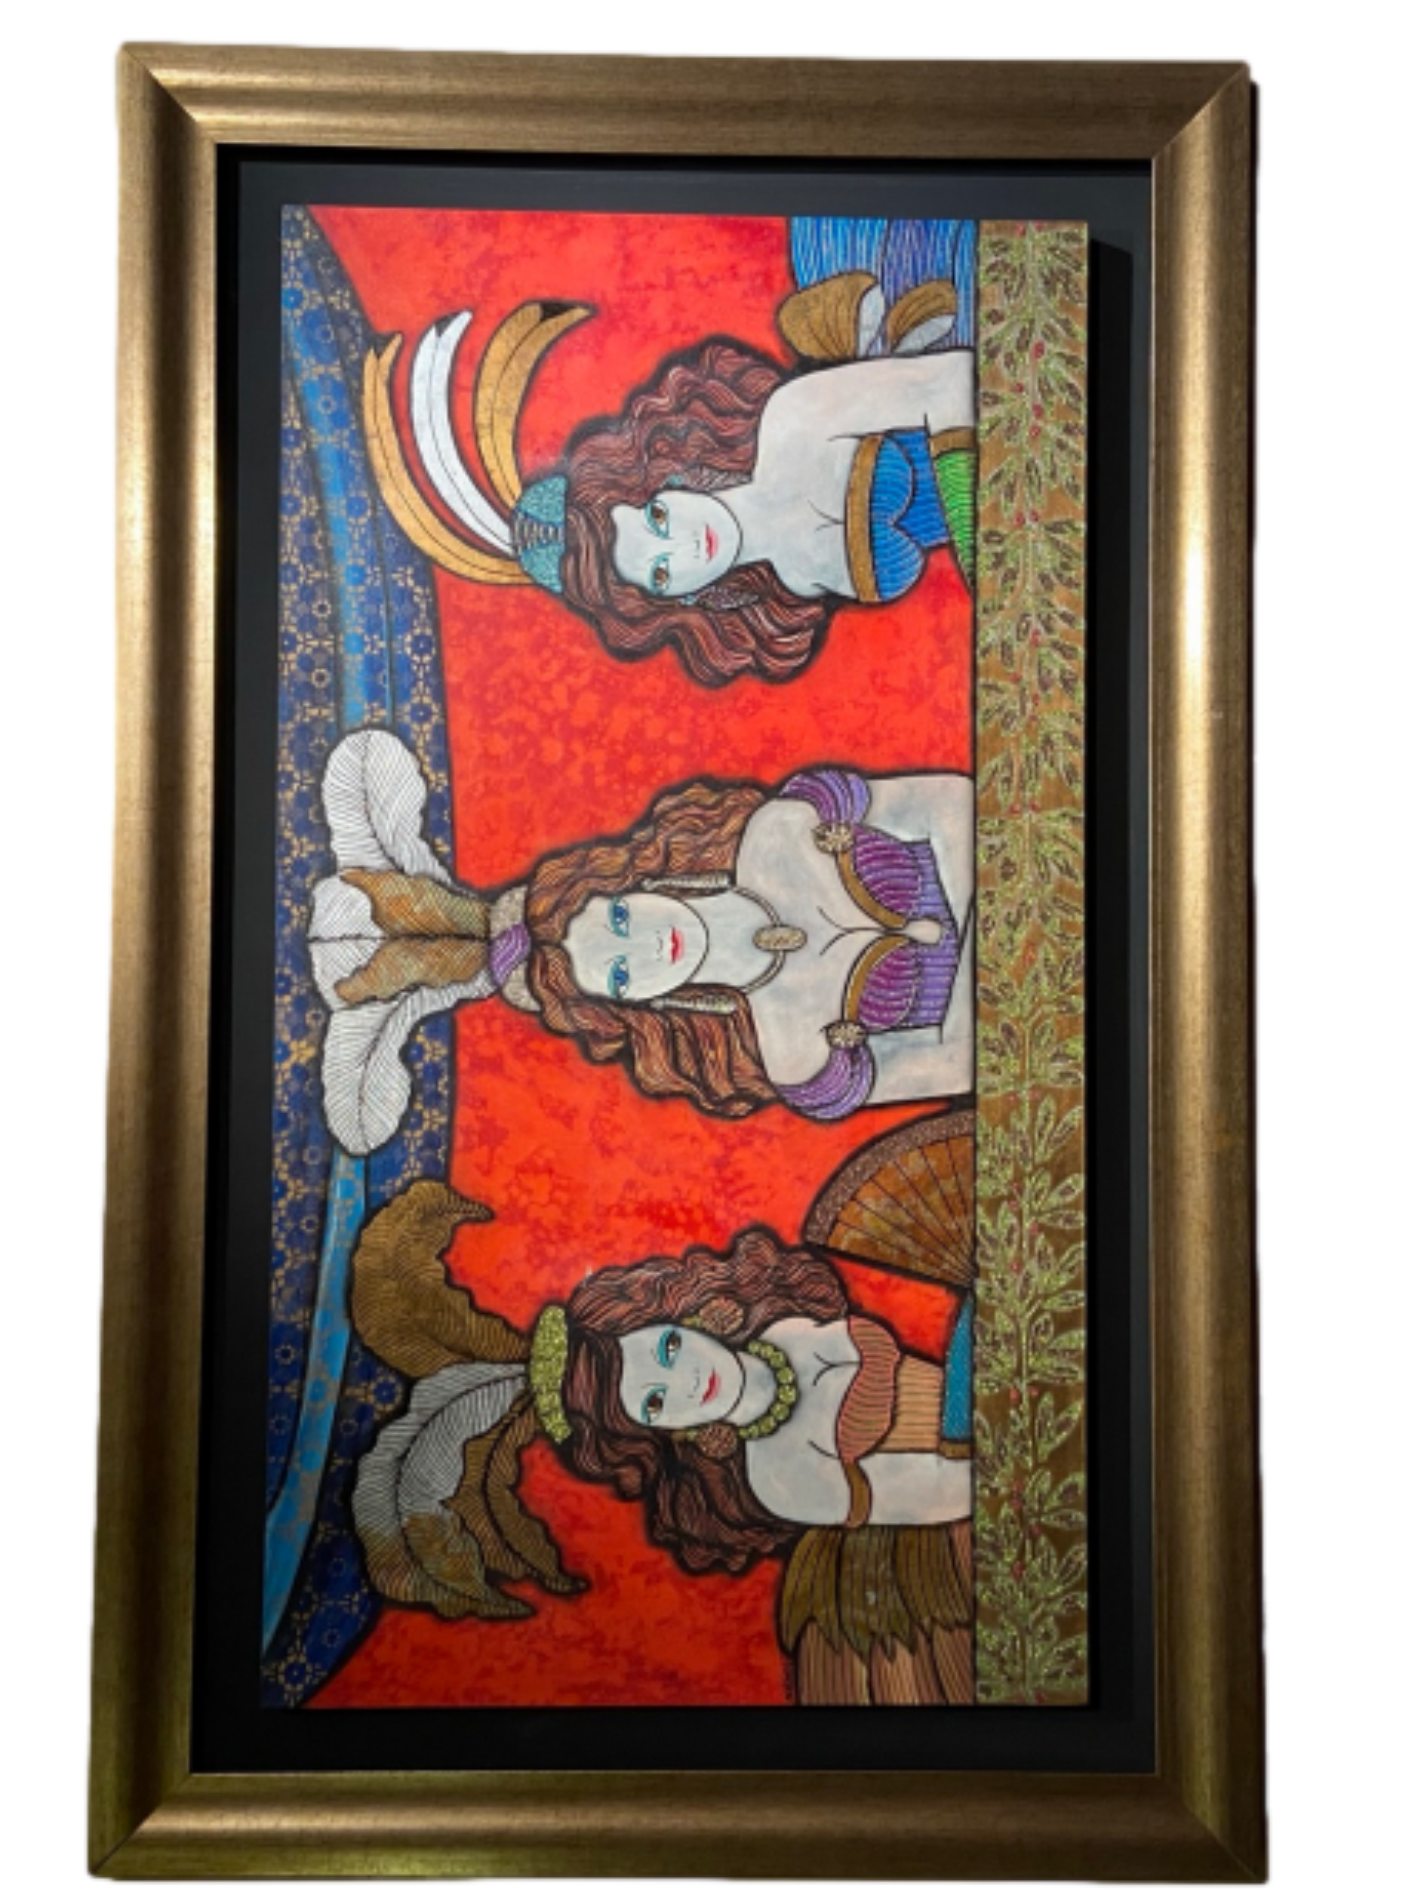 Obra "Mujeres del balcon" de Migliorisi 64.5 x 114 cm.